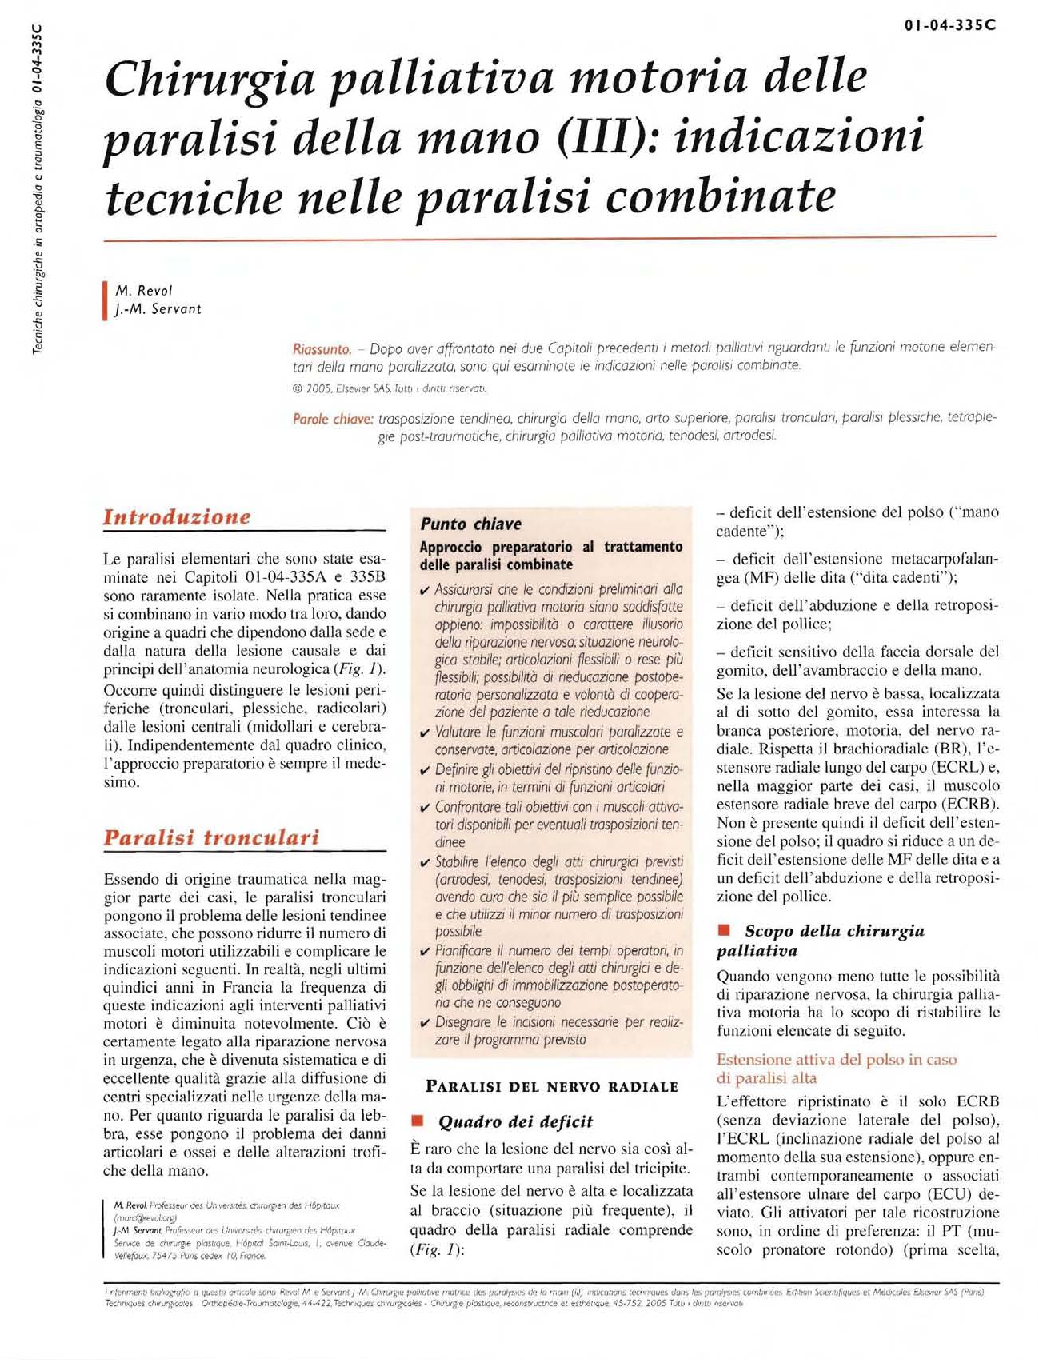 Chirurgia palliativa motoria delle paralisi della mano (III): indicazioni tecniche nelle paralisi combinate